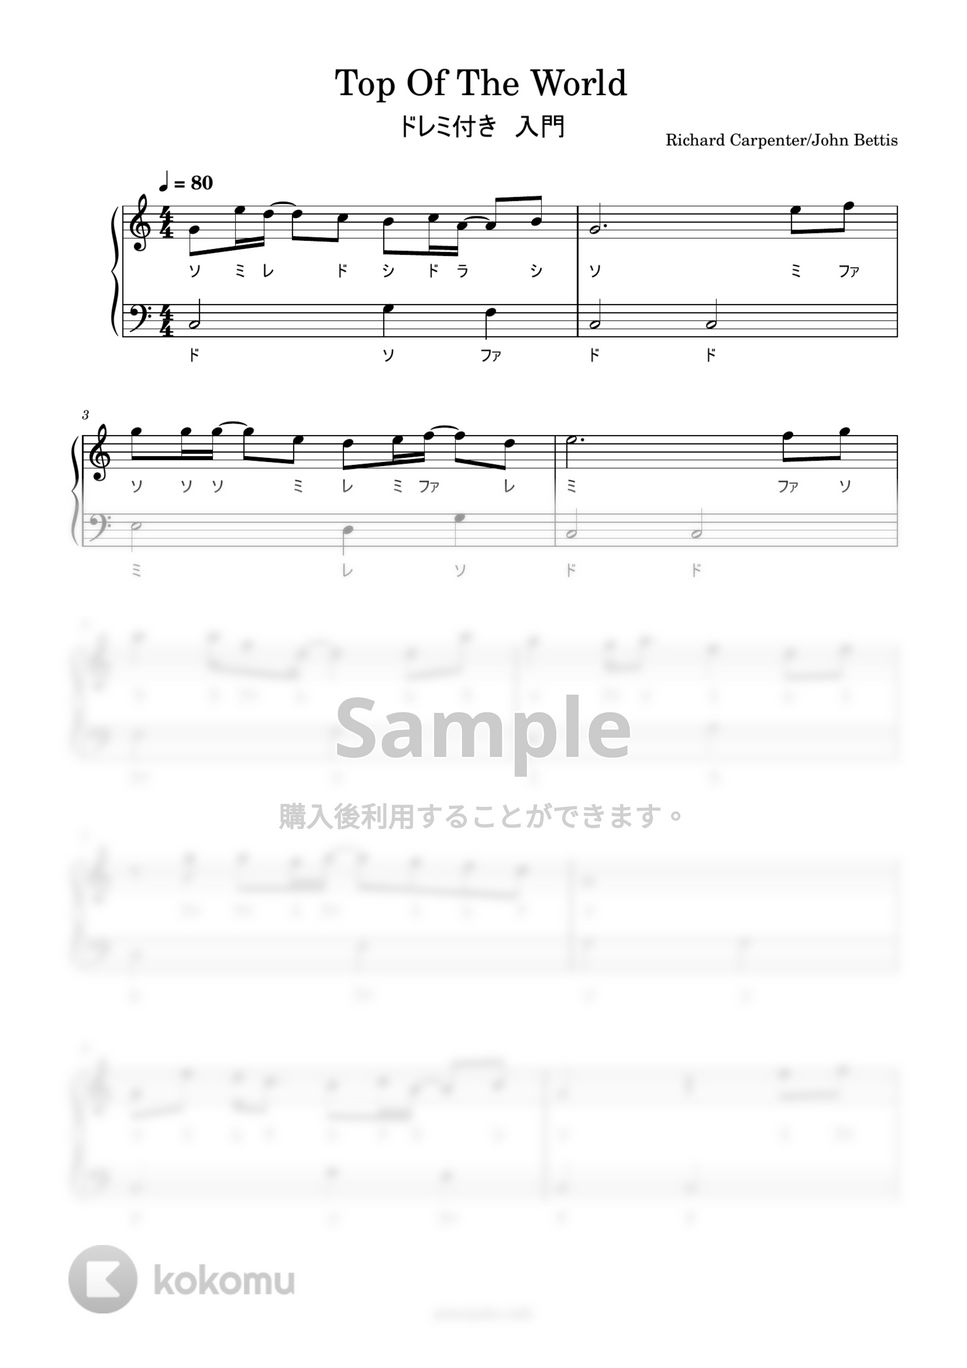 カーペンターズ - トップ・オブ・ザ・ワールド (ドレミ付き簡単楽譜) by ピアノ塾